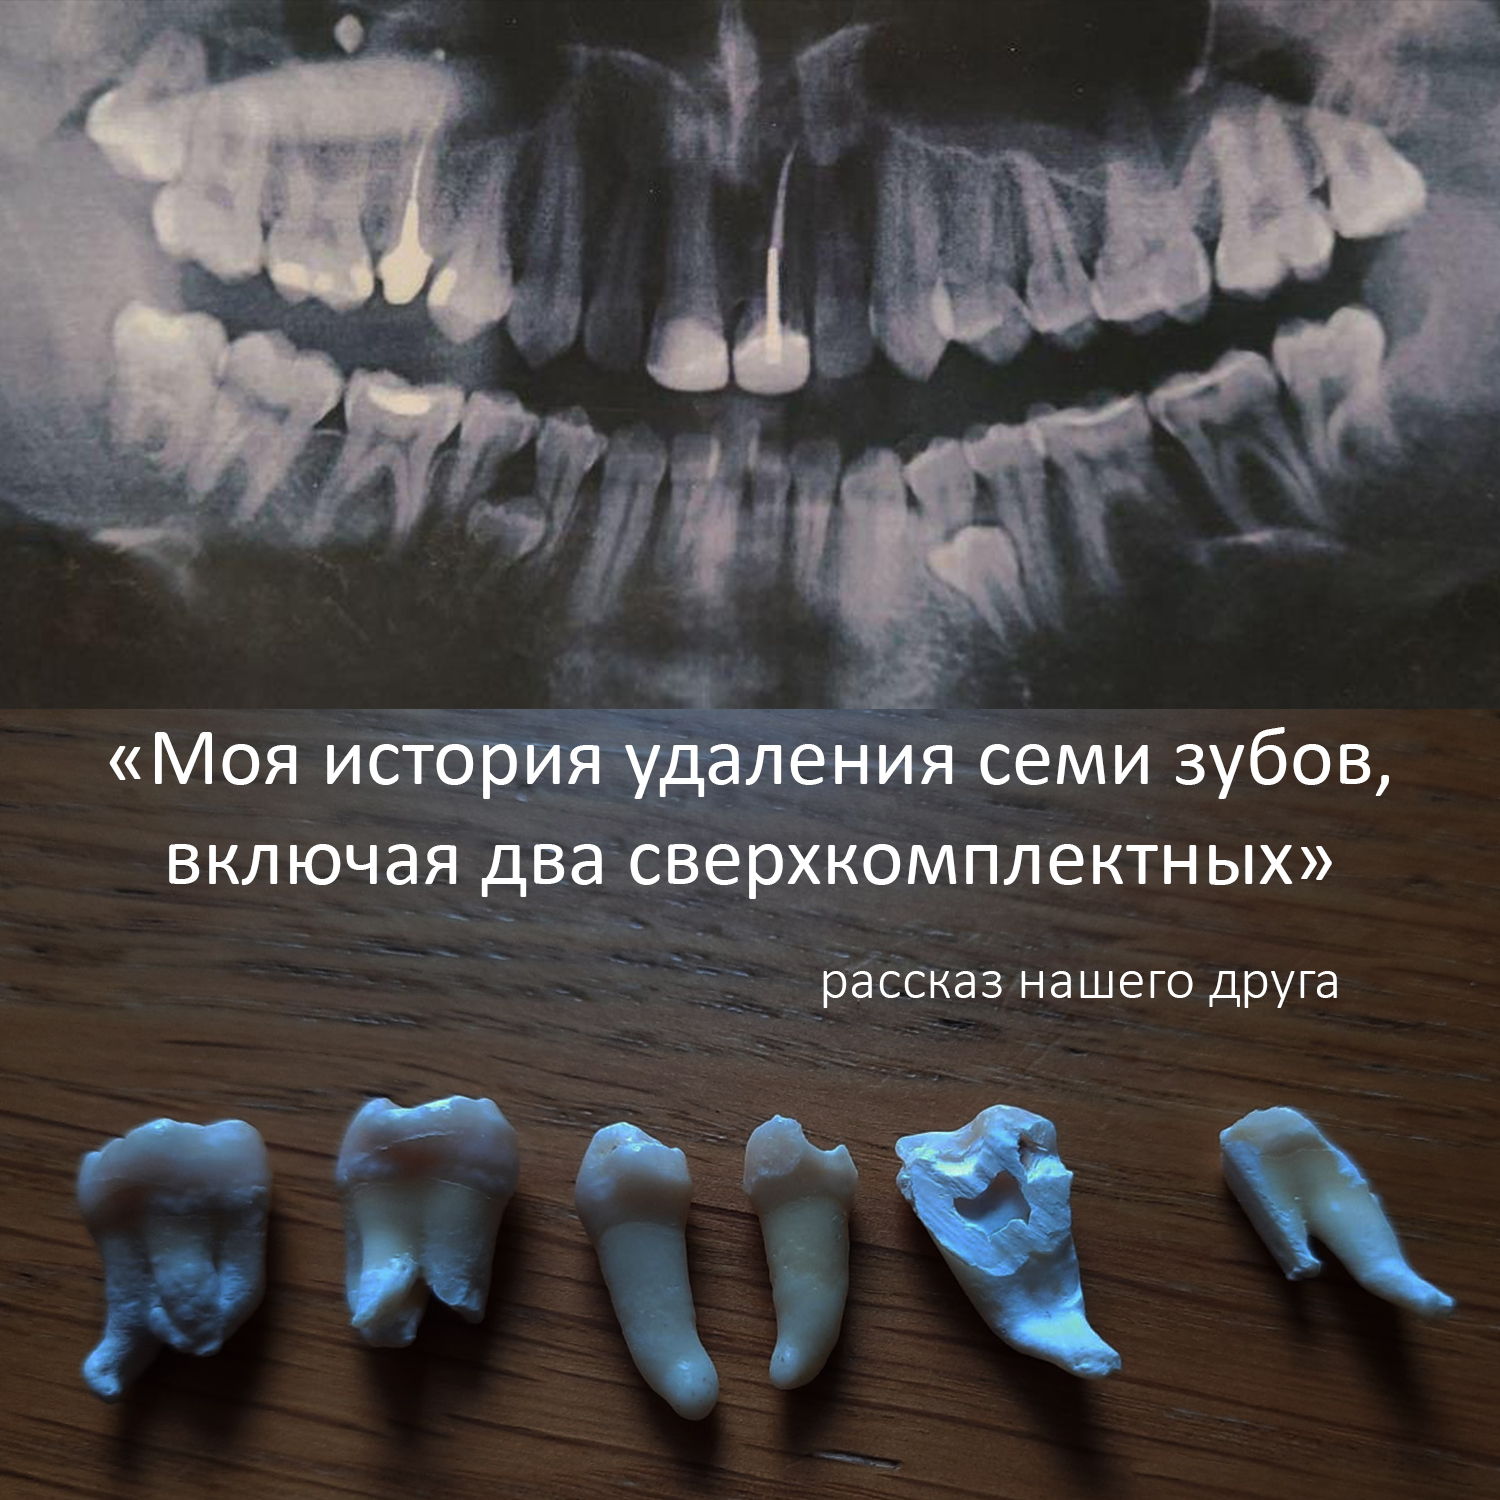 «Моя история удаления семи зубов, включая два сверхкомплектных». Рассказ нашего друга